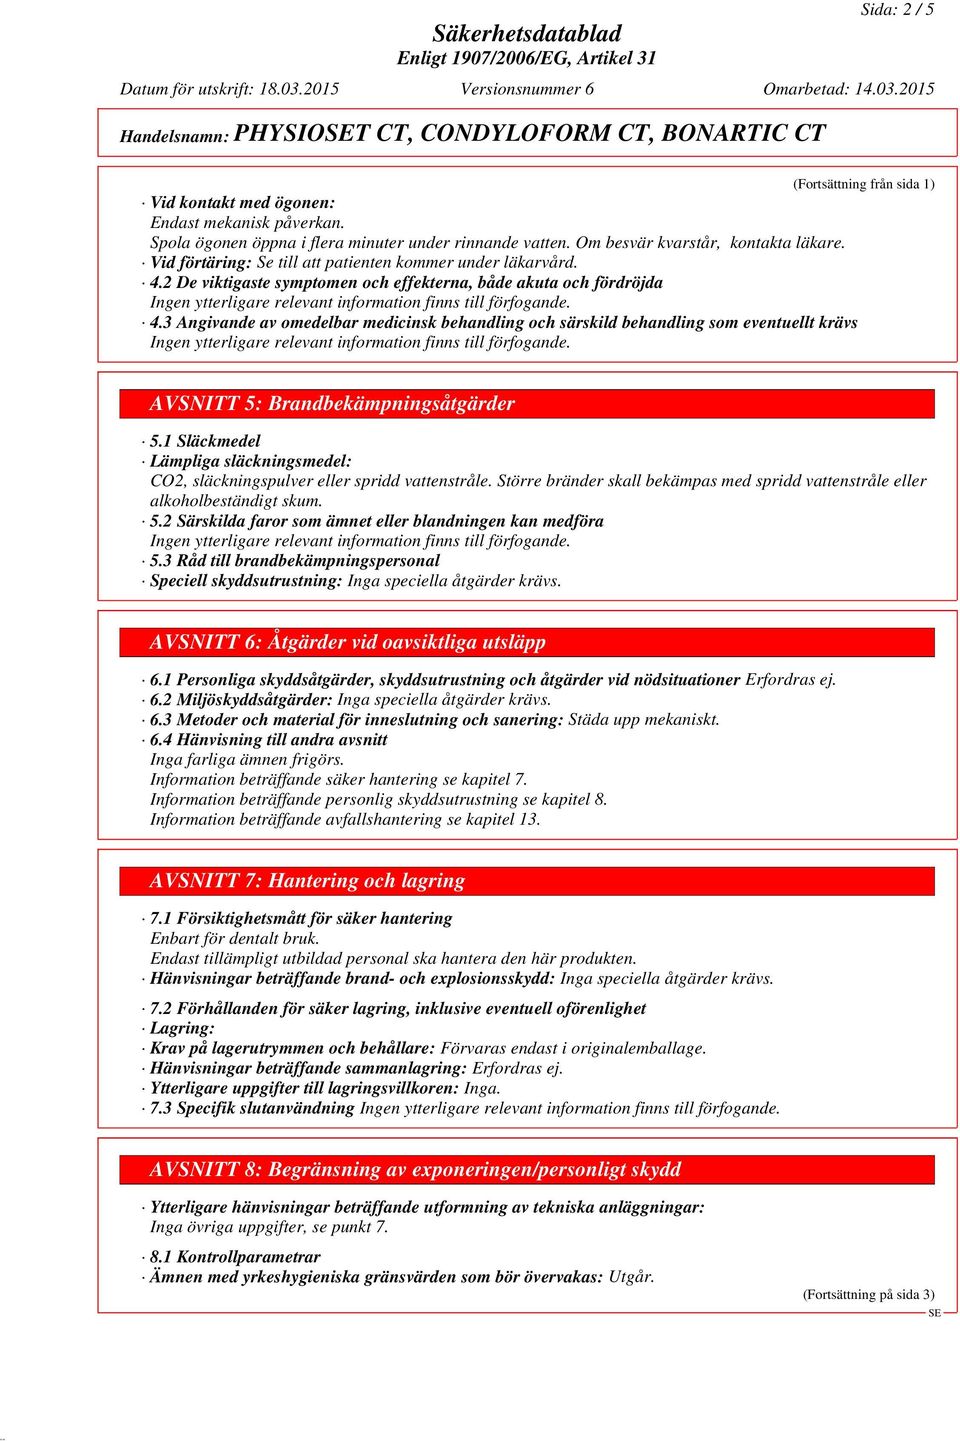 3 Angivande av omedelbar medicinsk behandling och särskild behandling som eventuellt krävs (Fortsättning från sida 1) AVSNITT 5: Brandbekämpningsåtgärder 5.